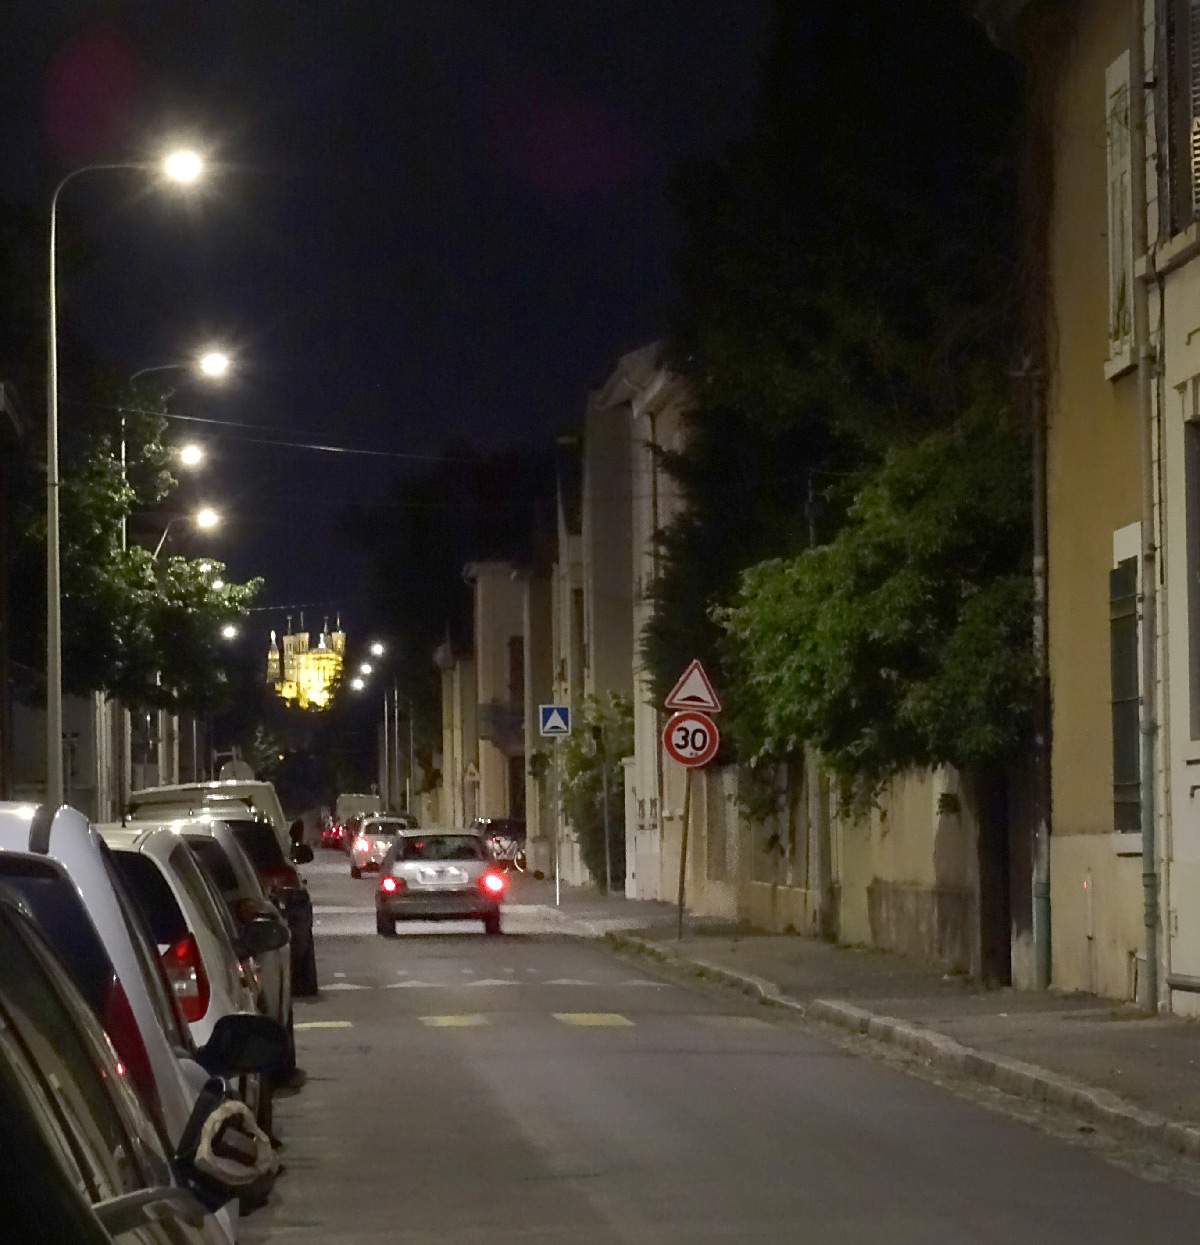 Eclairage urbain du quartier Monchat de Lyon